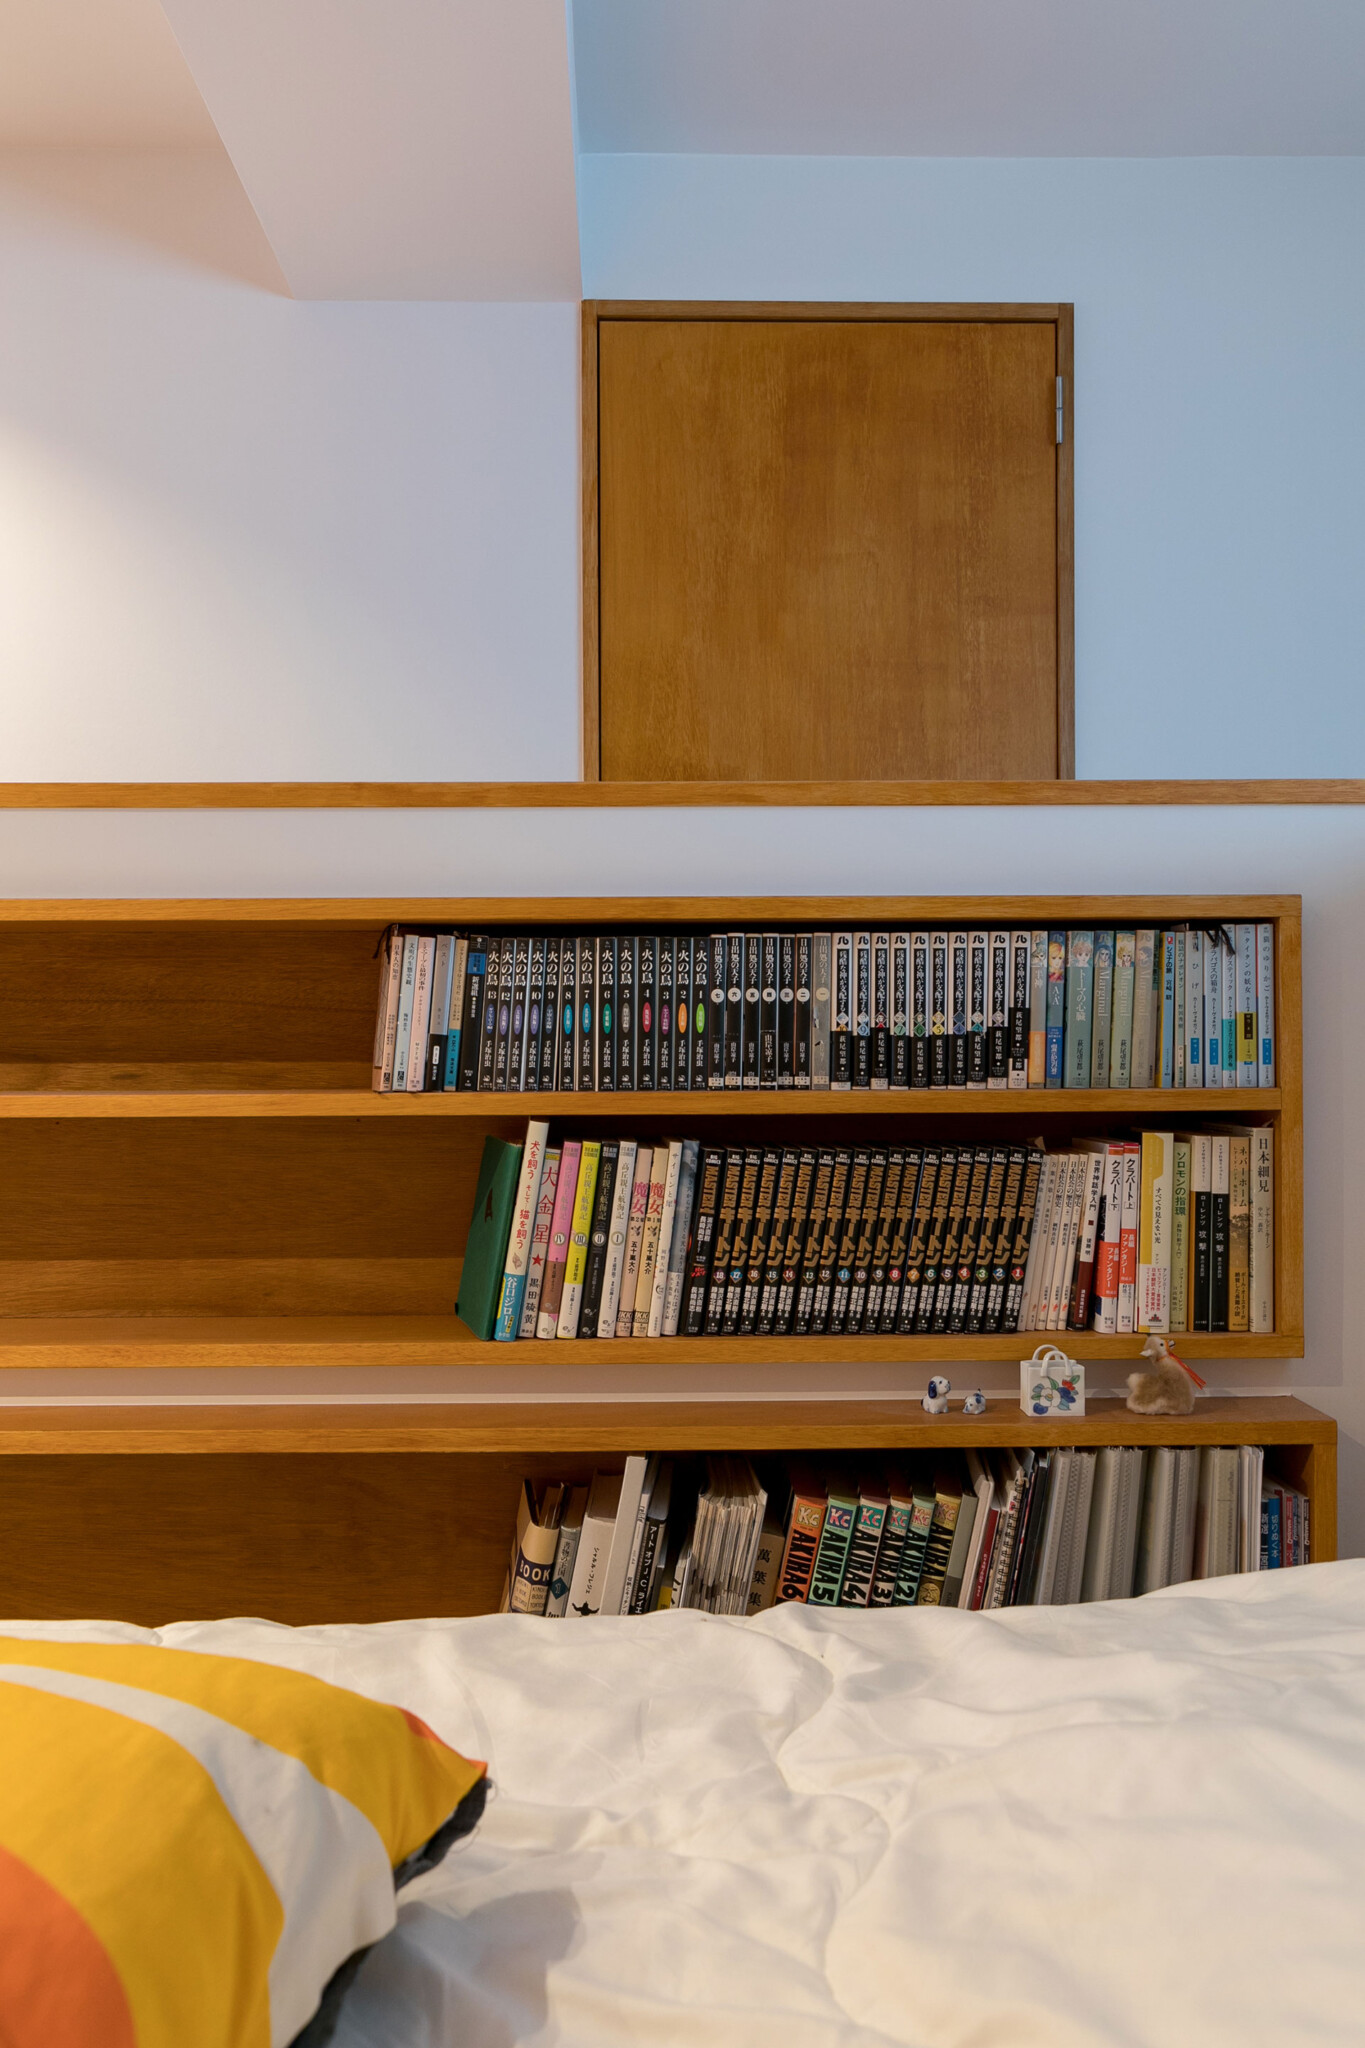 ベッドサイドには本棚を壁に埋め込んだ。本の種類に合わせて棚の高さと奥行きを変えた。まだまだ収納できる余裕がうれしい。